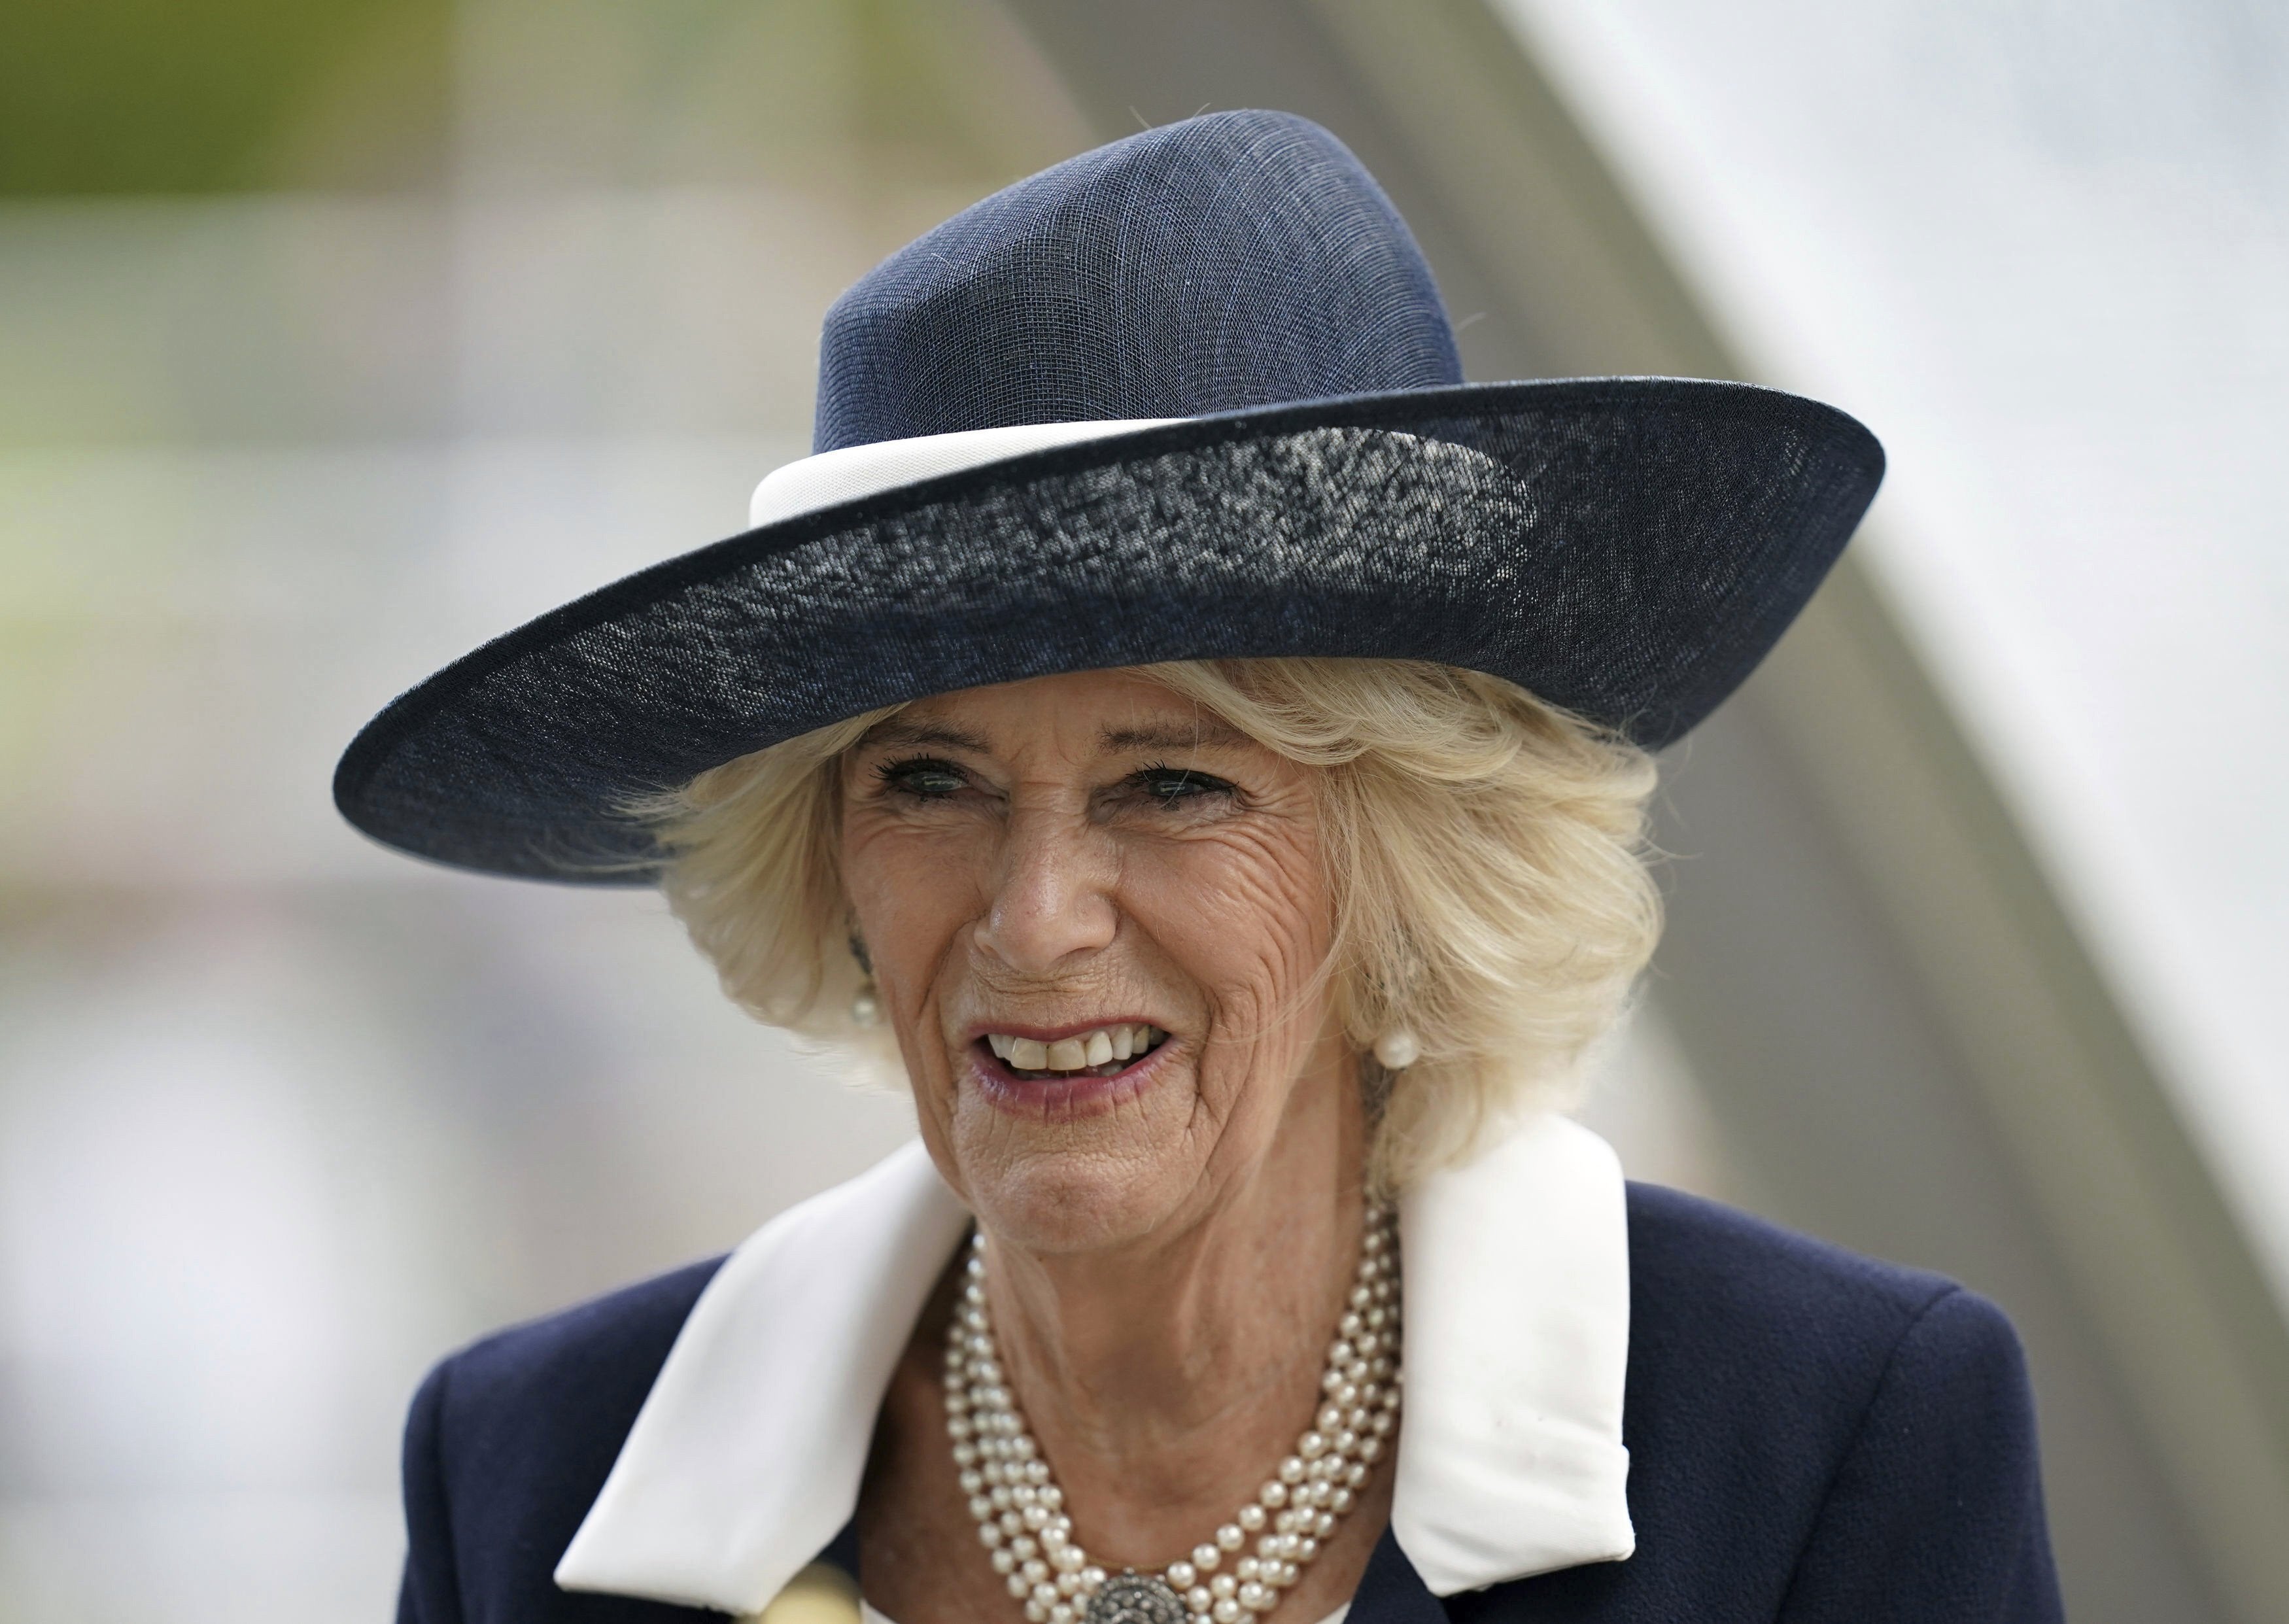 El exmarido de la Reina Camilla se abre paso en la Familia Real y tendrá un papel destacado Foto